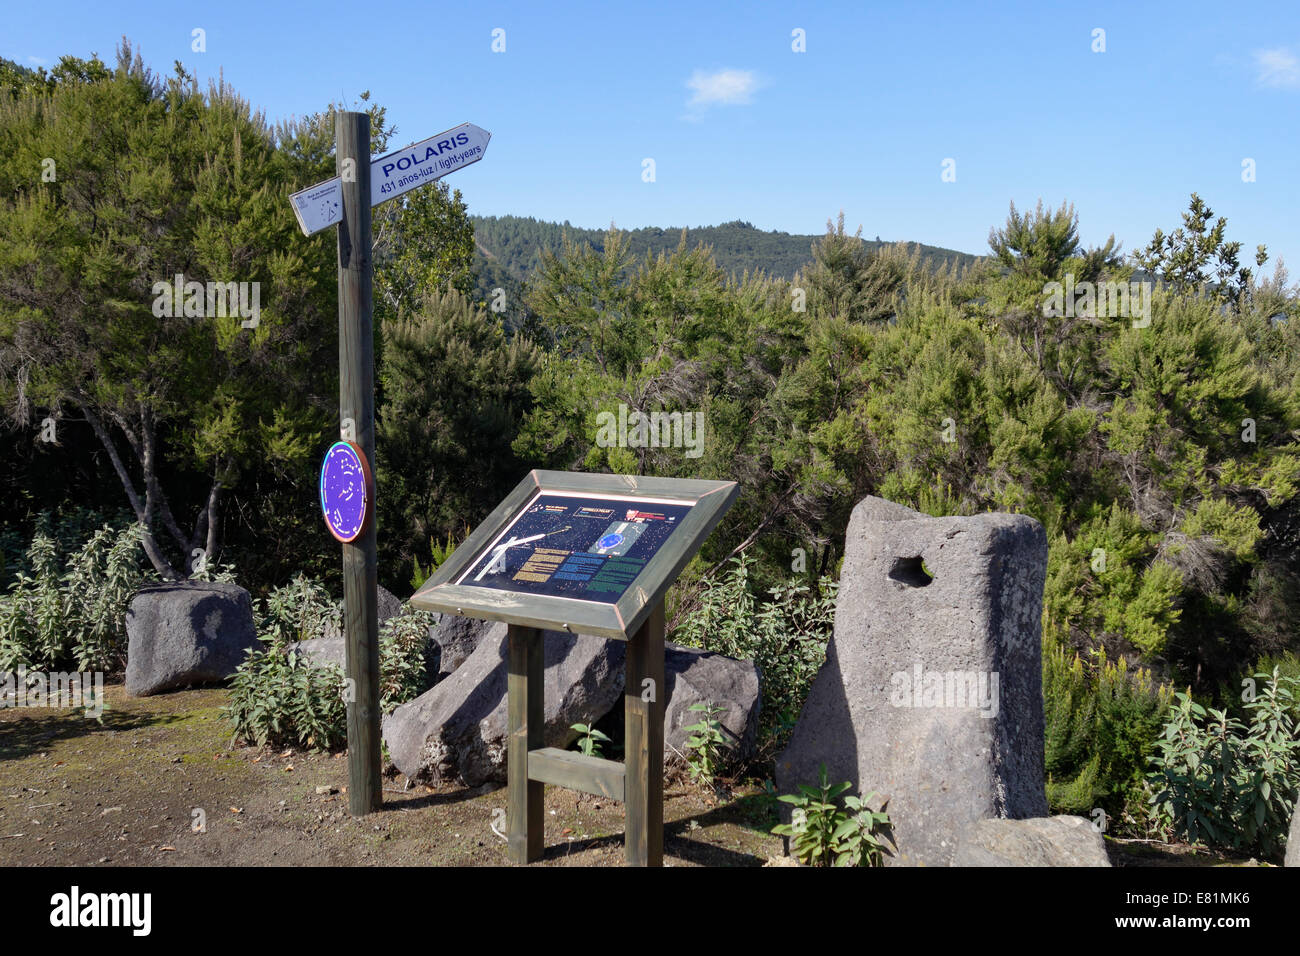 Point de vue astronomique, La Palma, Canary Islands, Spain Banque D'Images